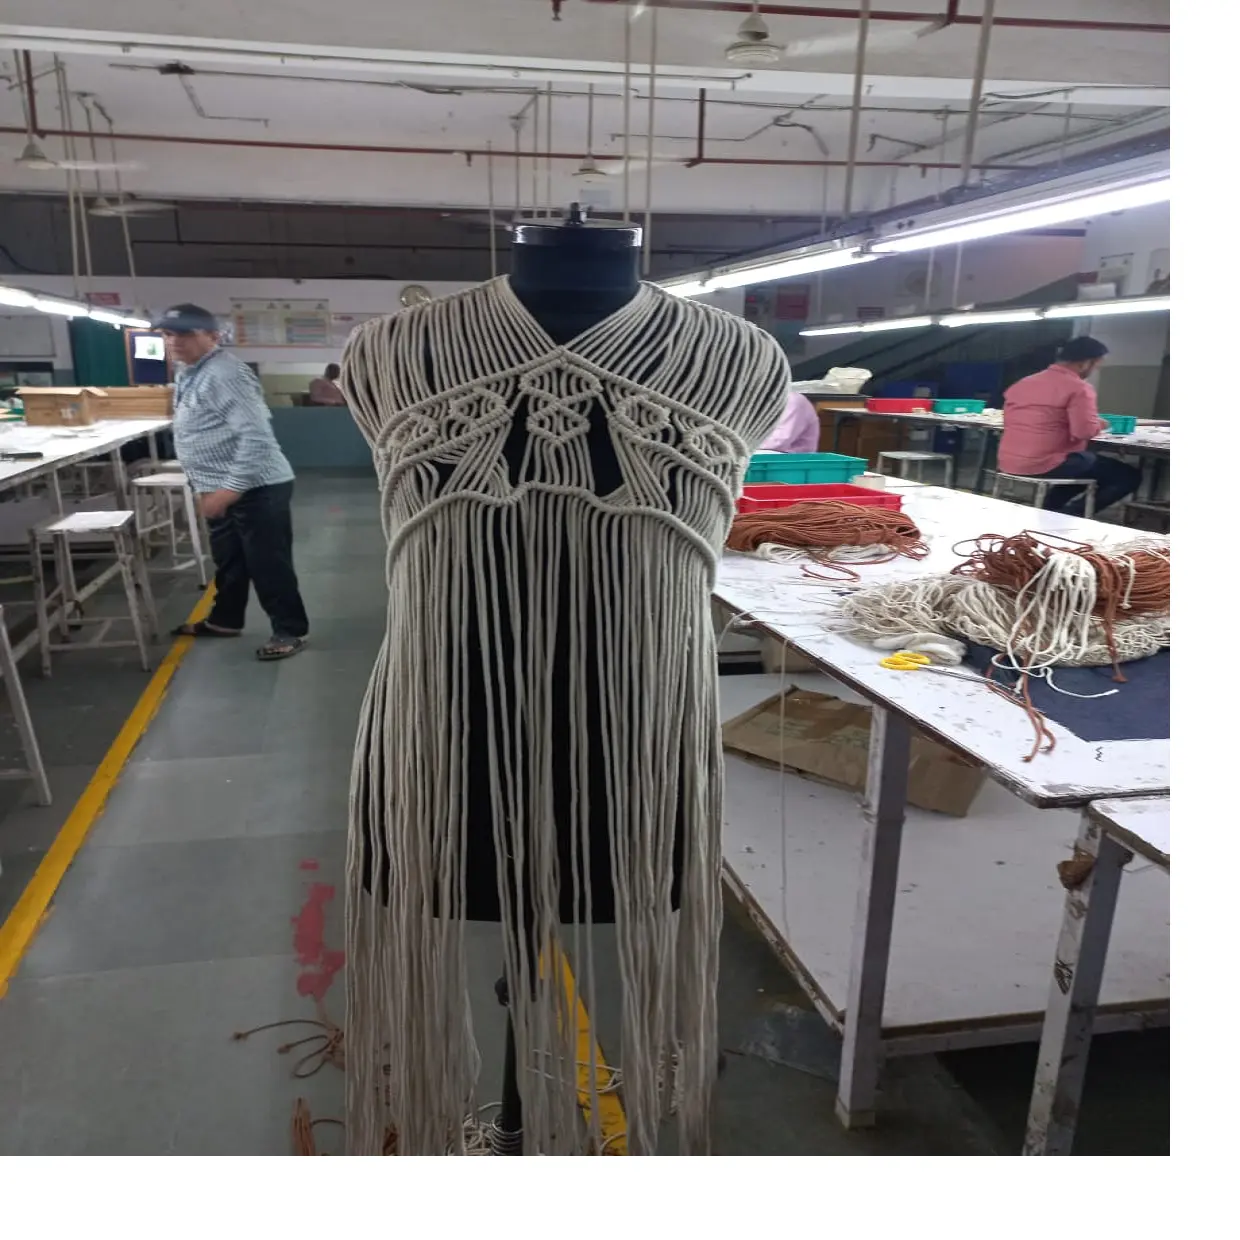 Abbigliamento e indumenti da donna all'uncinetto in cotone 100% su misura realizzati con filato di cotone 100%. Ideale per la rivendita